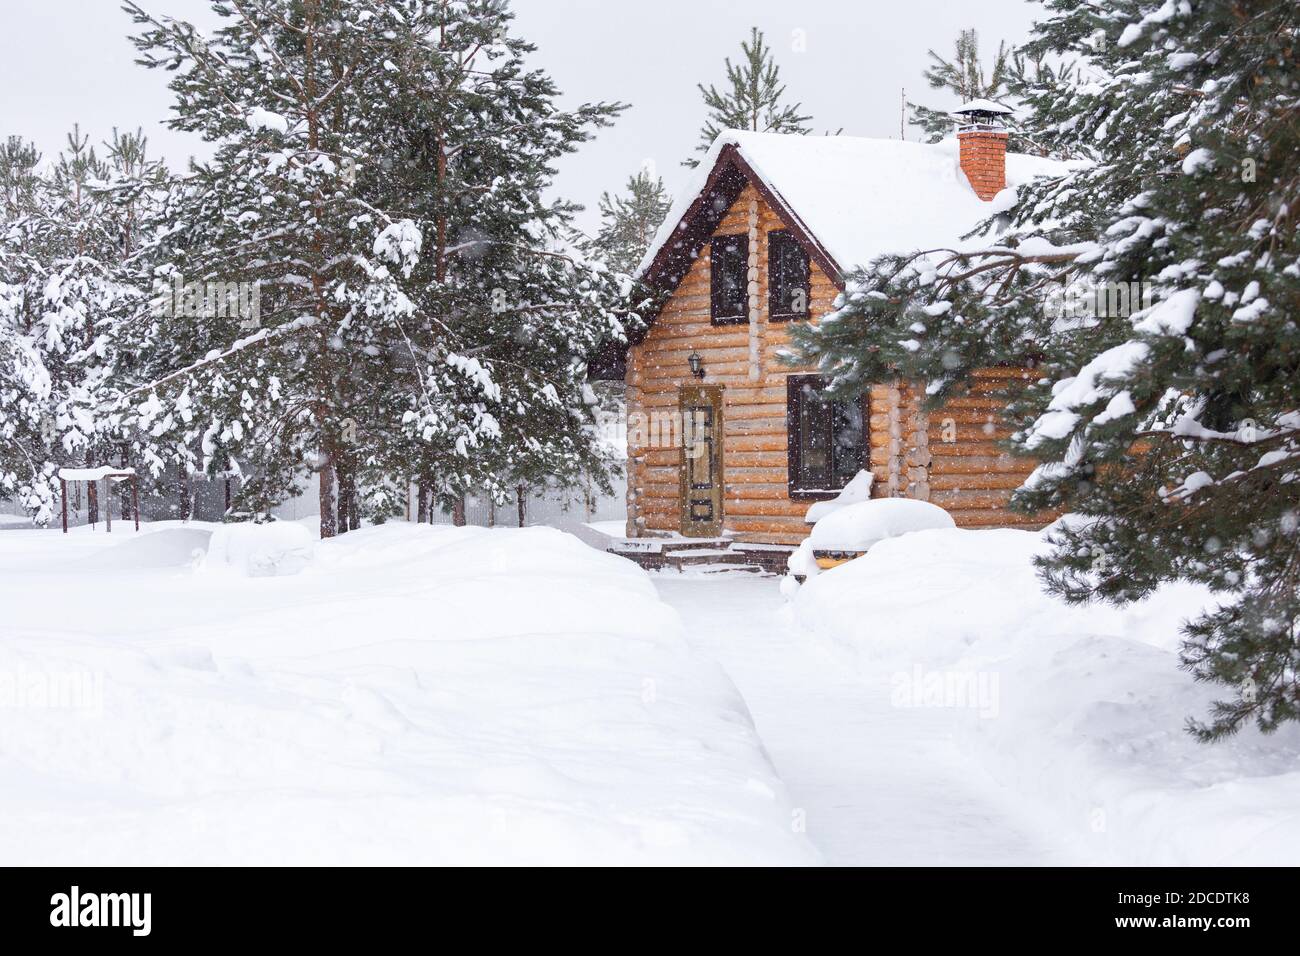 Casa rústica de madera, pinos cubiertos de nieve, grandes nevadas, nevadas. Paisaje rural hermoso de invierno. Escena no urbana. Año Nuevo, Navidad. Espacio de copia Foto de stock